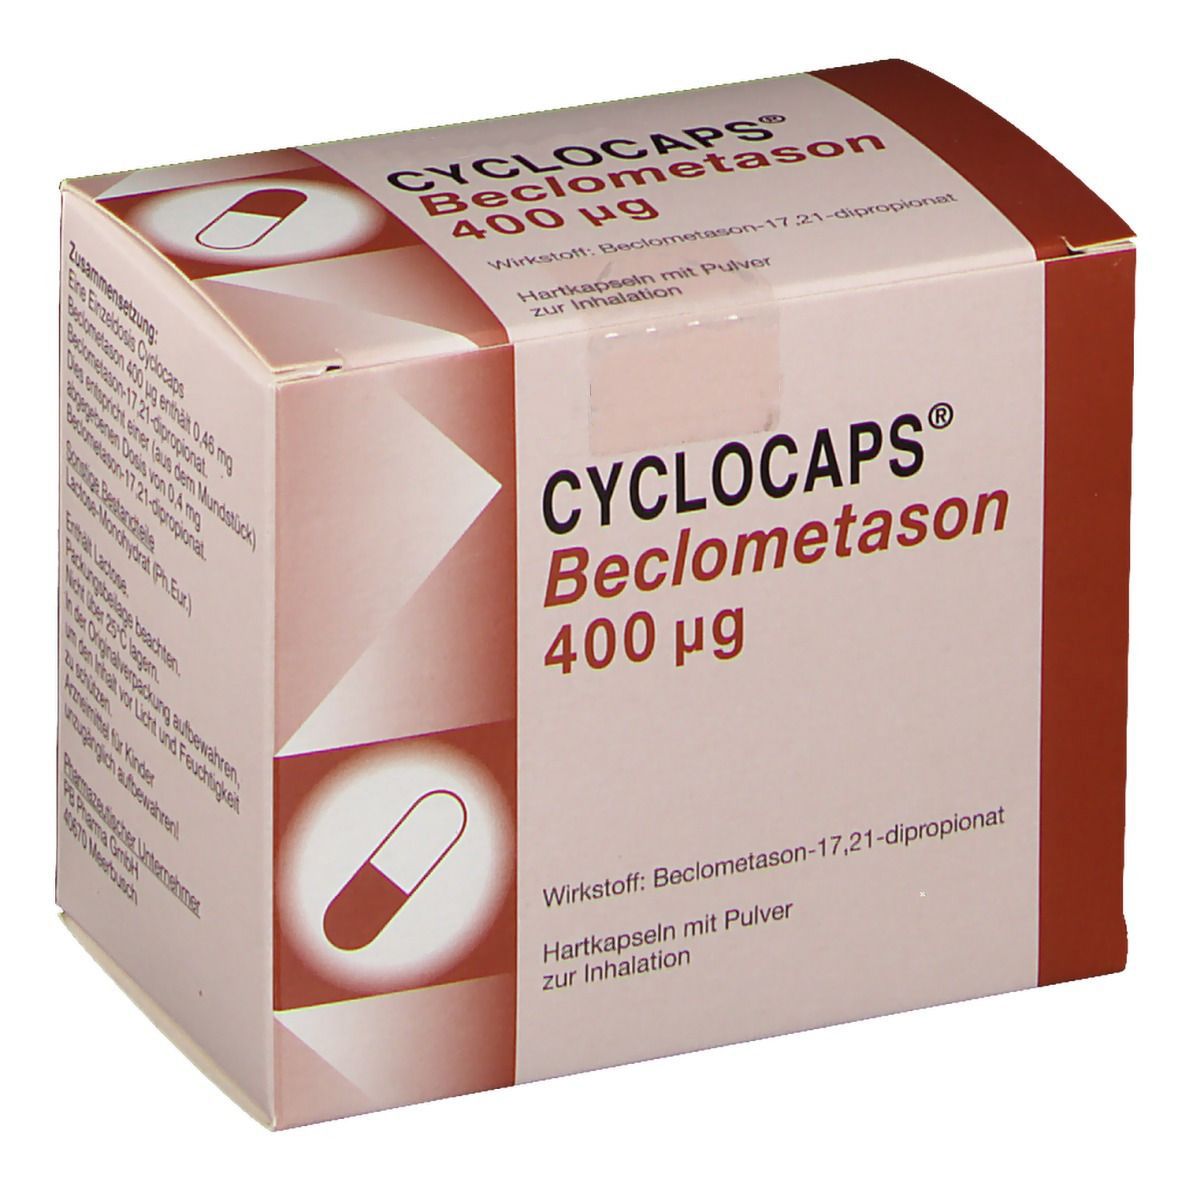 Cyclocaps Beclometason 400ug Inh.Kaps.+Cycloh.